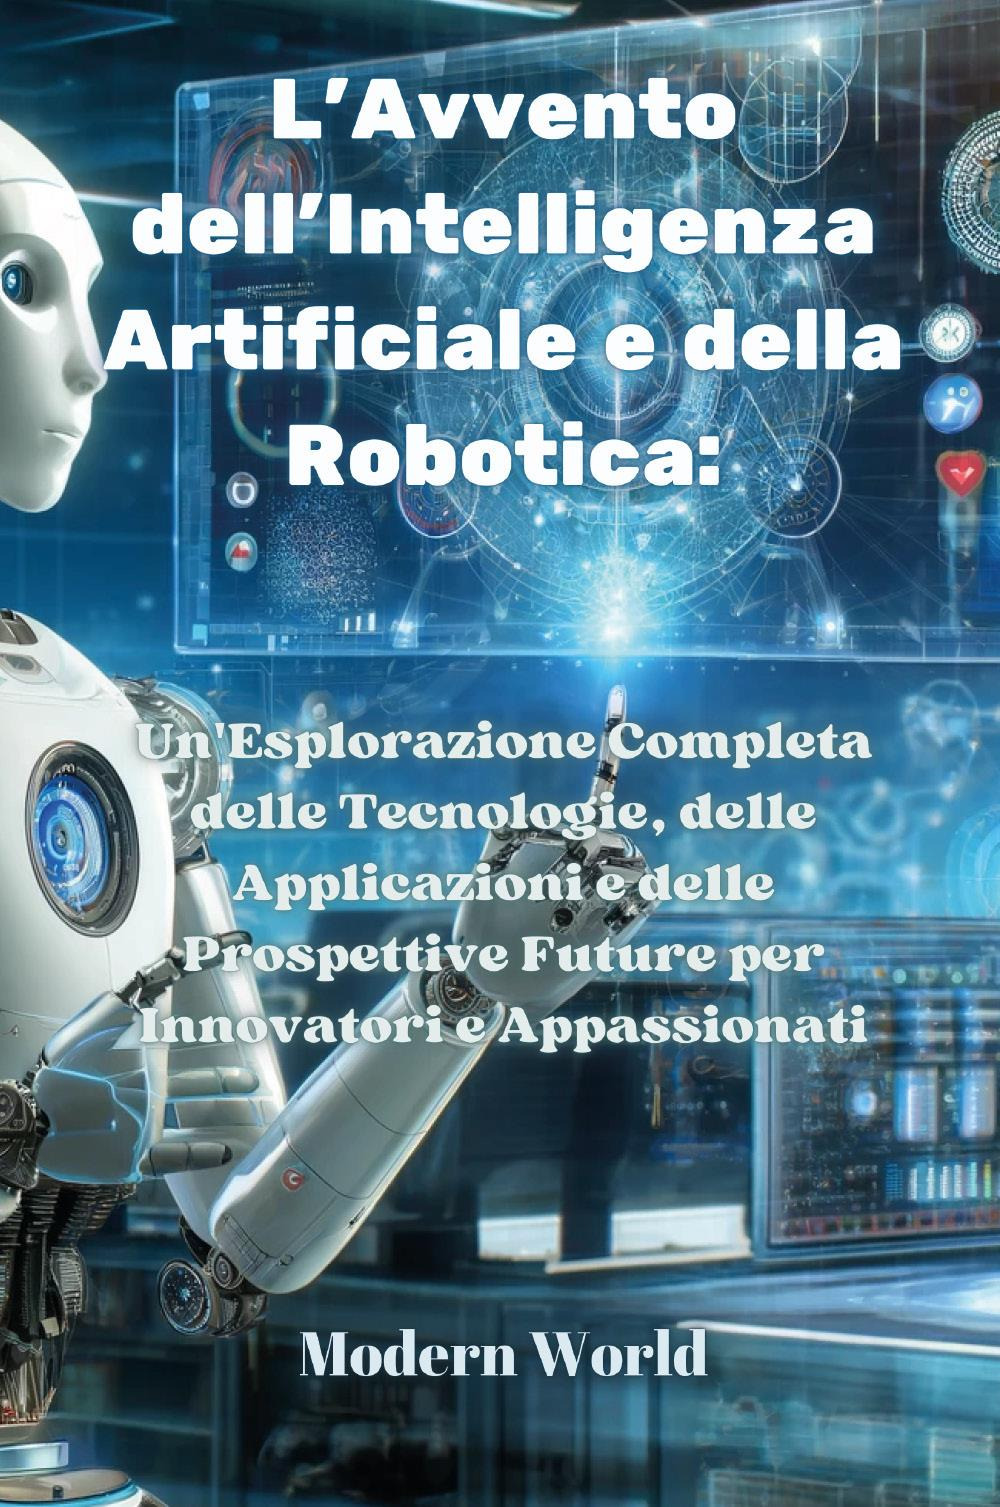 L'avvento dell'intelligenza artificiale e della robotica. Un'esplorazione completa delle tecnologie, delle applicazioni e delle prospettive future per innovatori e appassionati